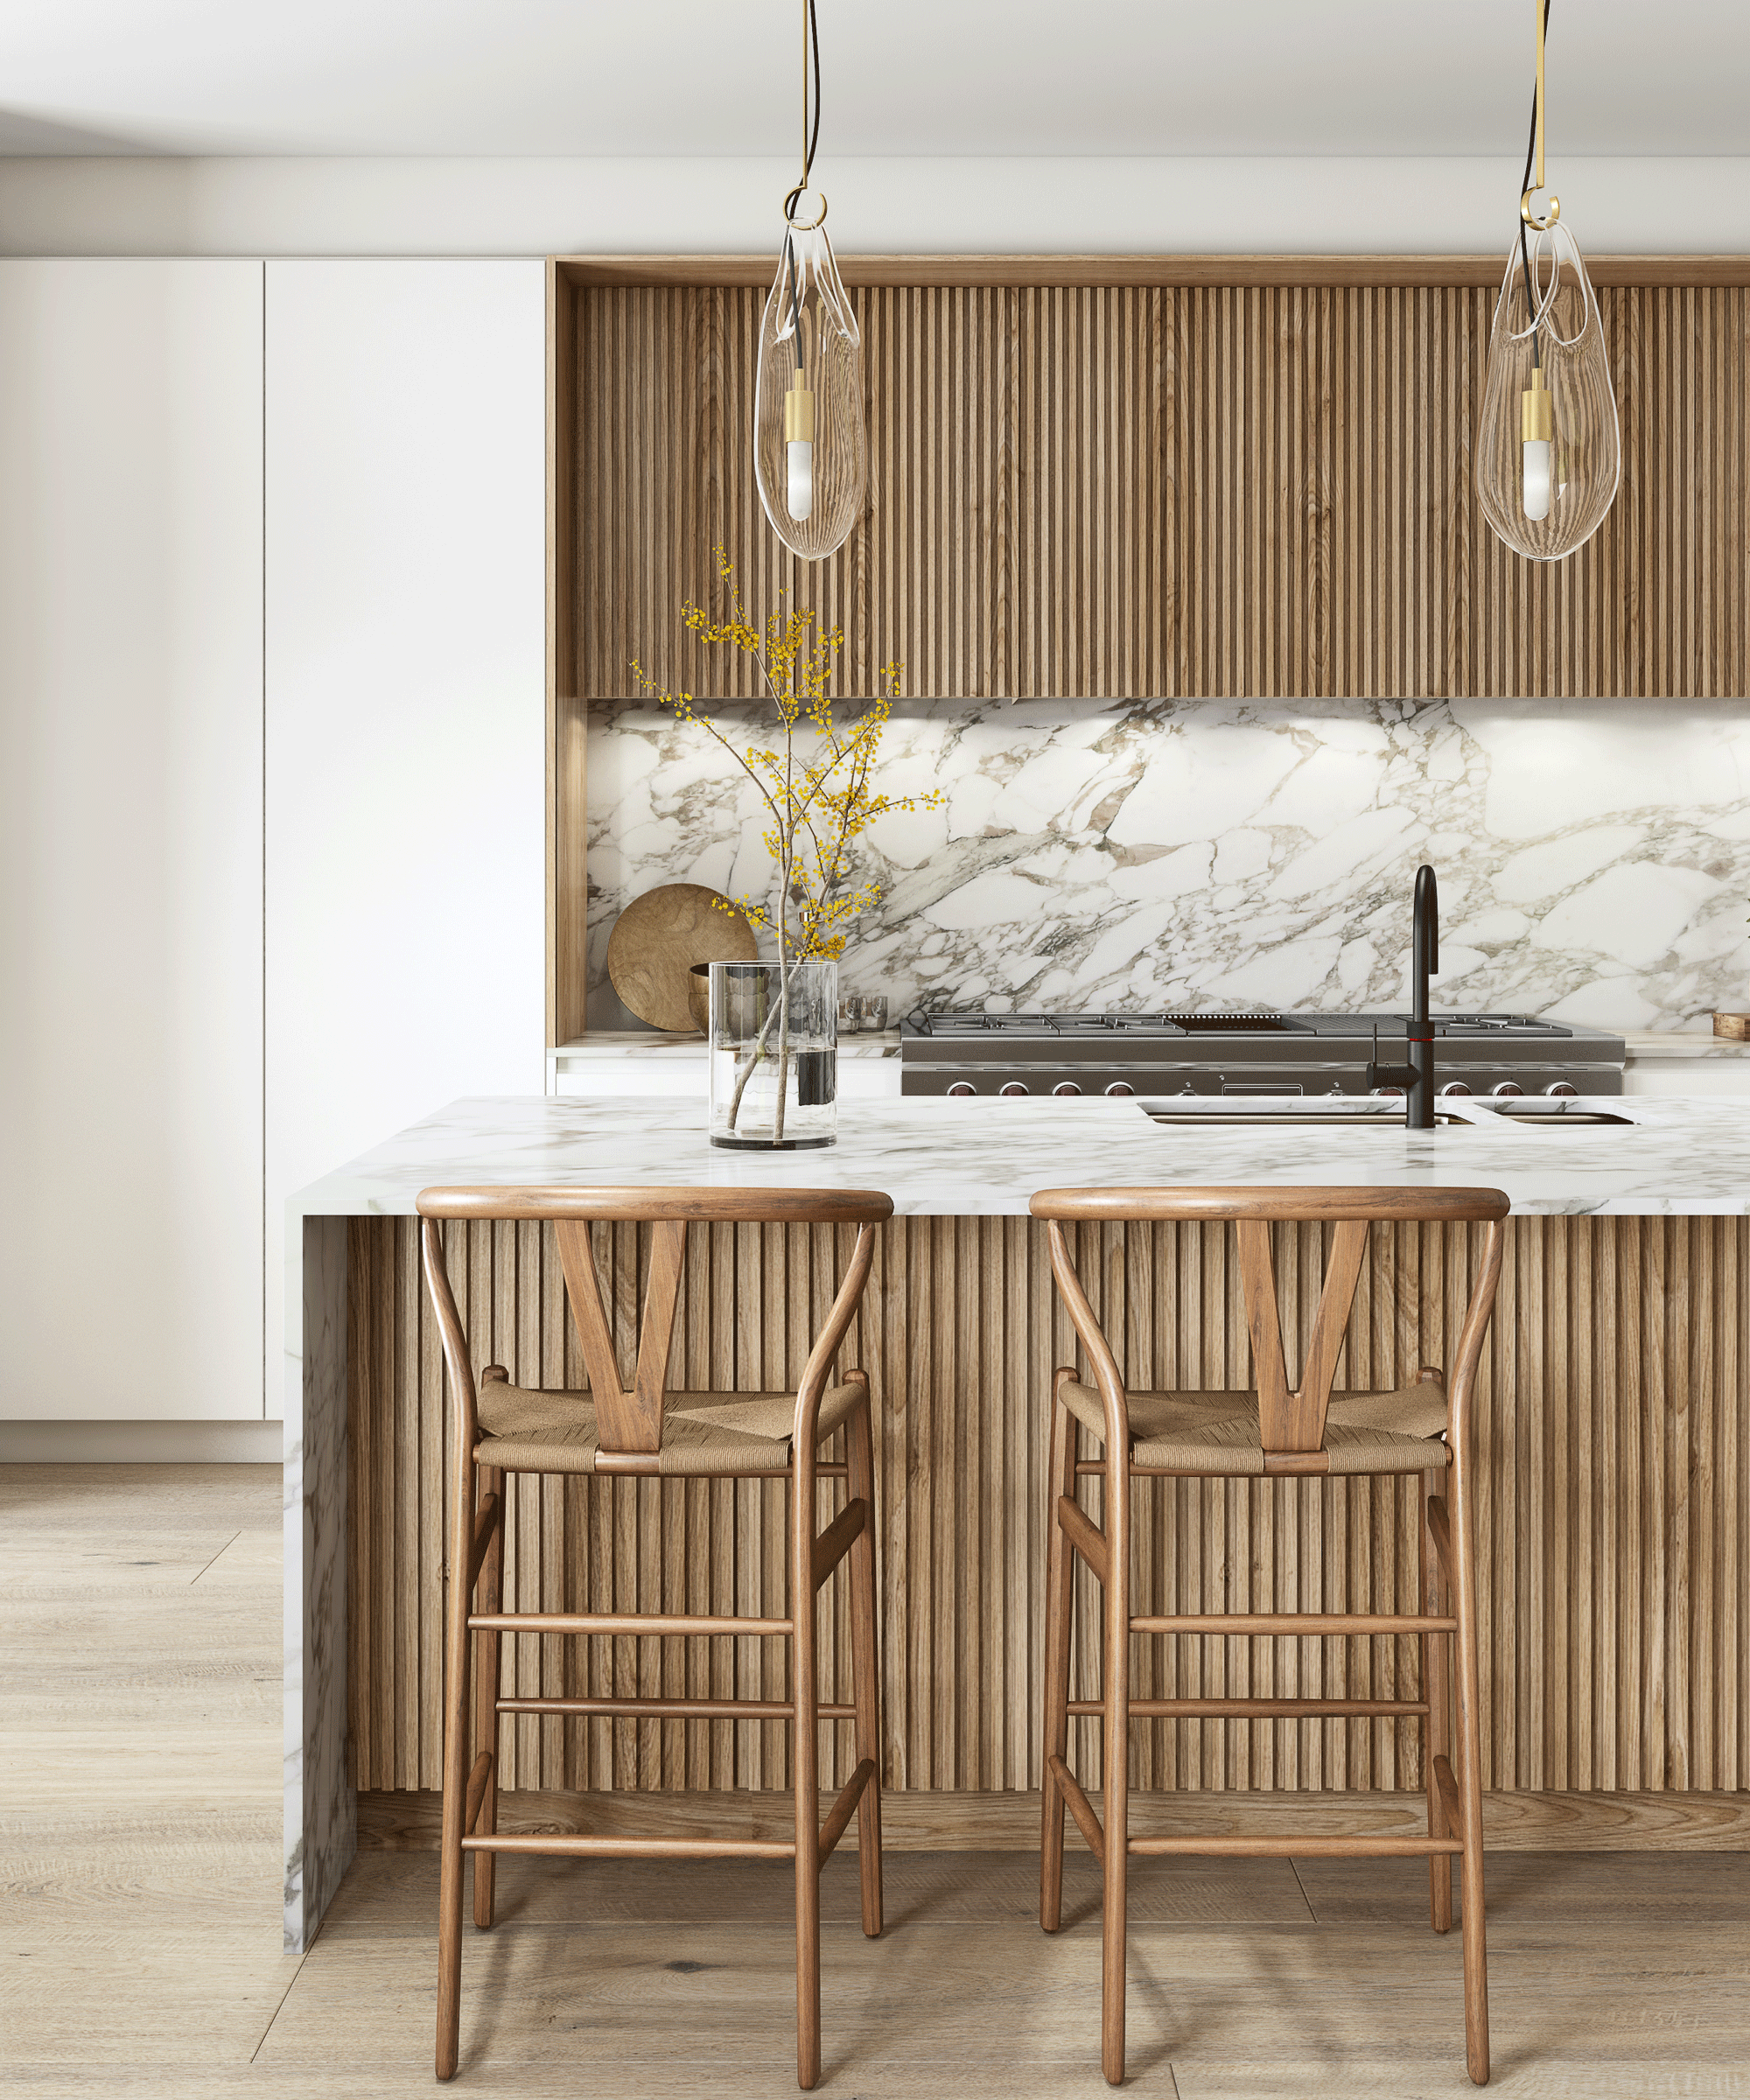 wood kitchen cabinet ideas - Fluted wooden kitchen